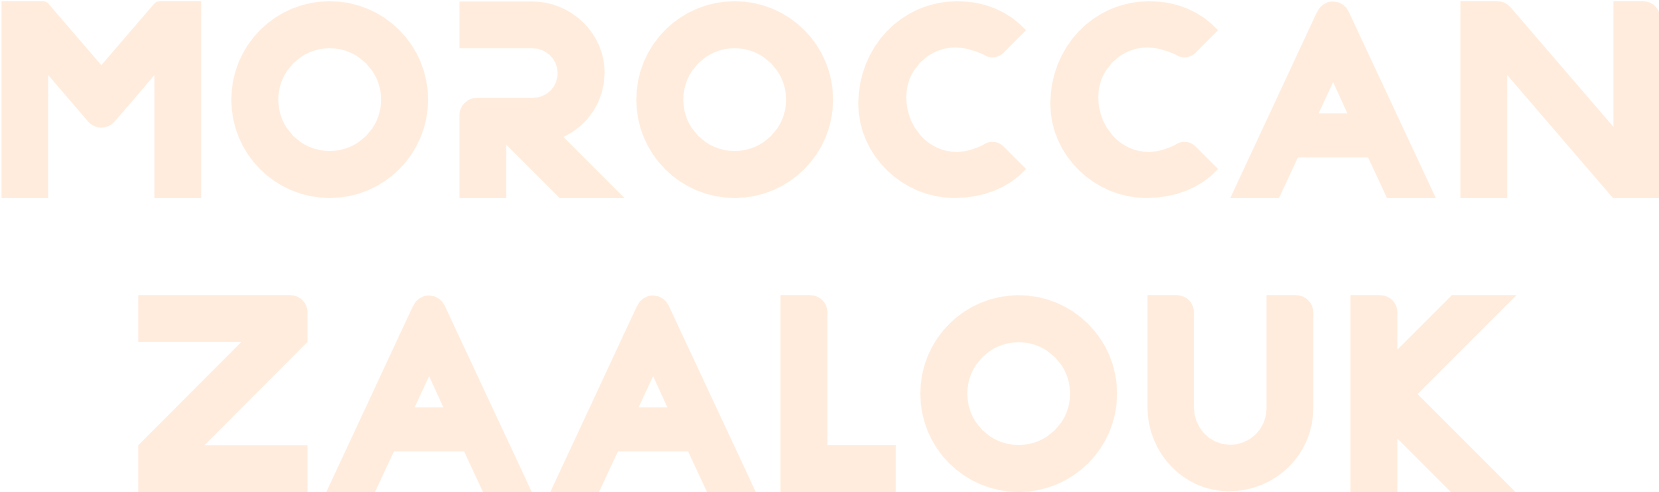 Moroccan Zaalouk logo